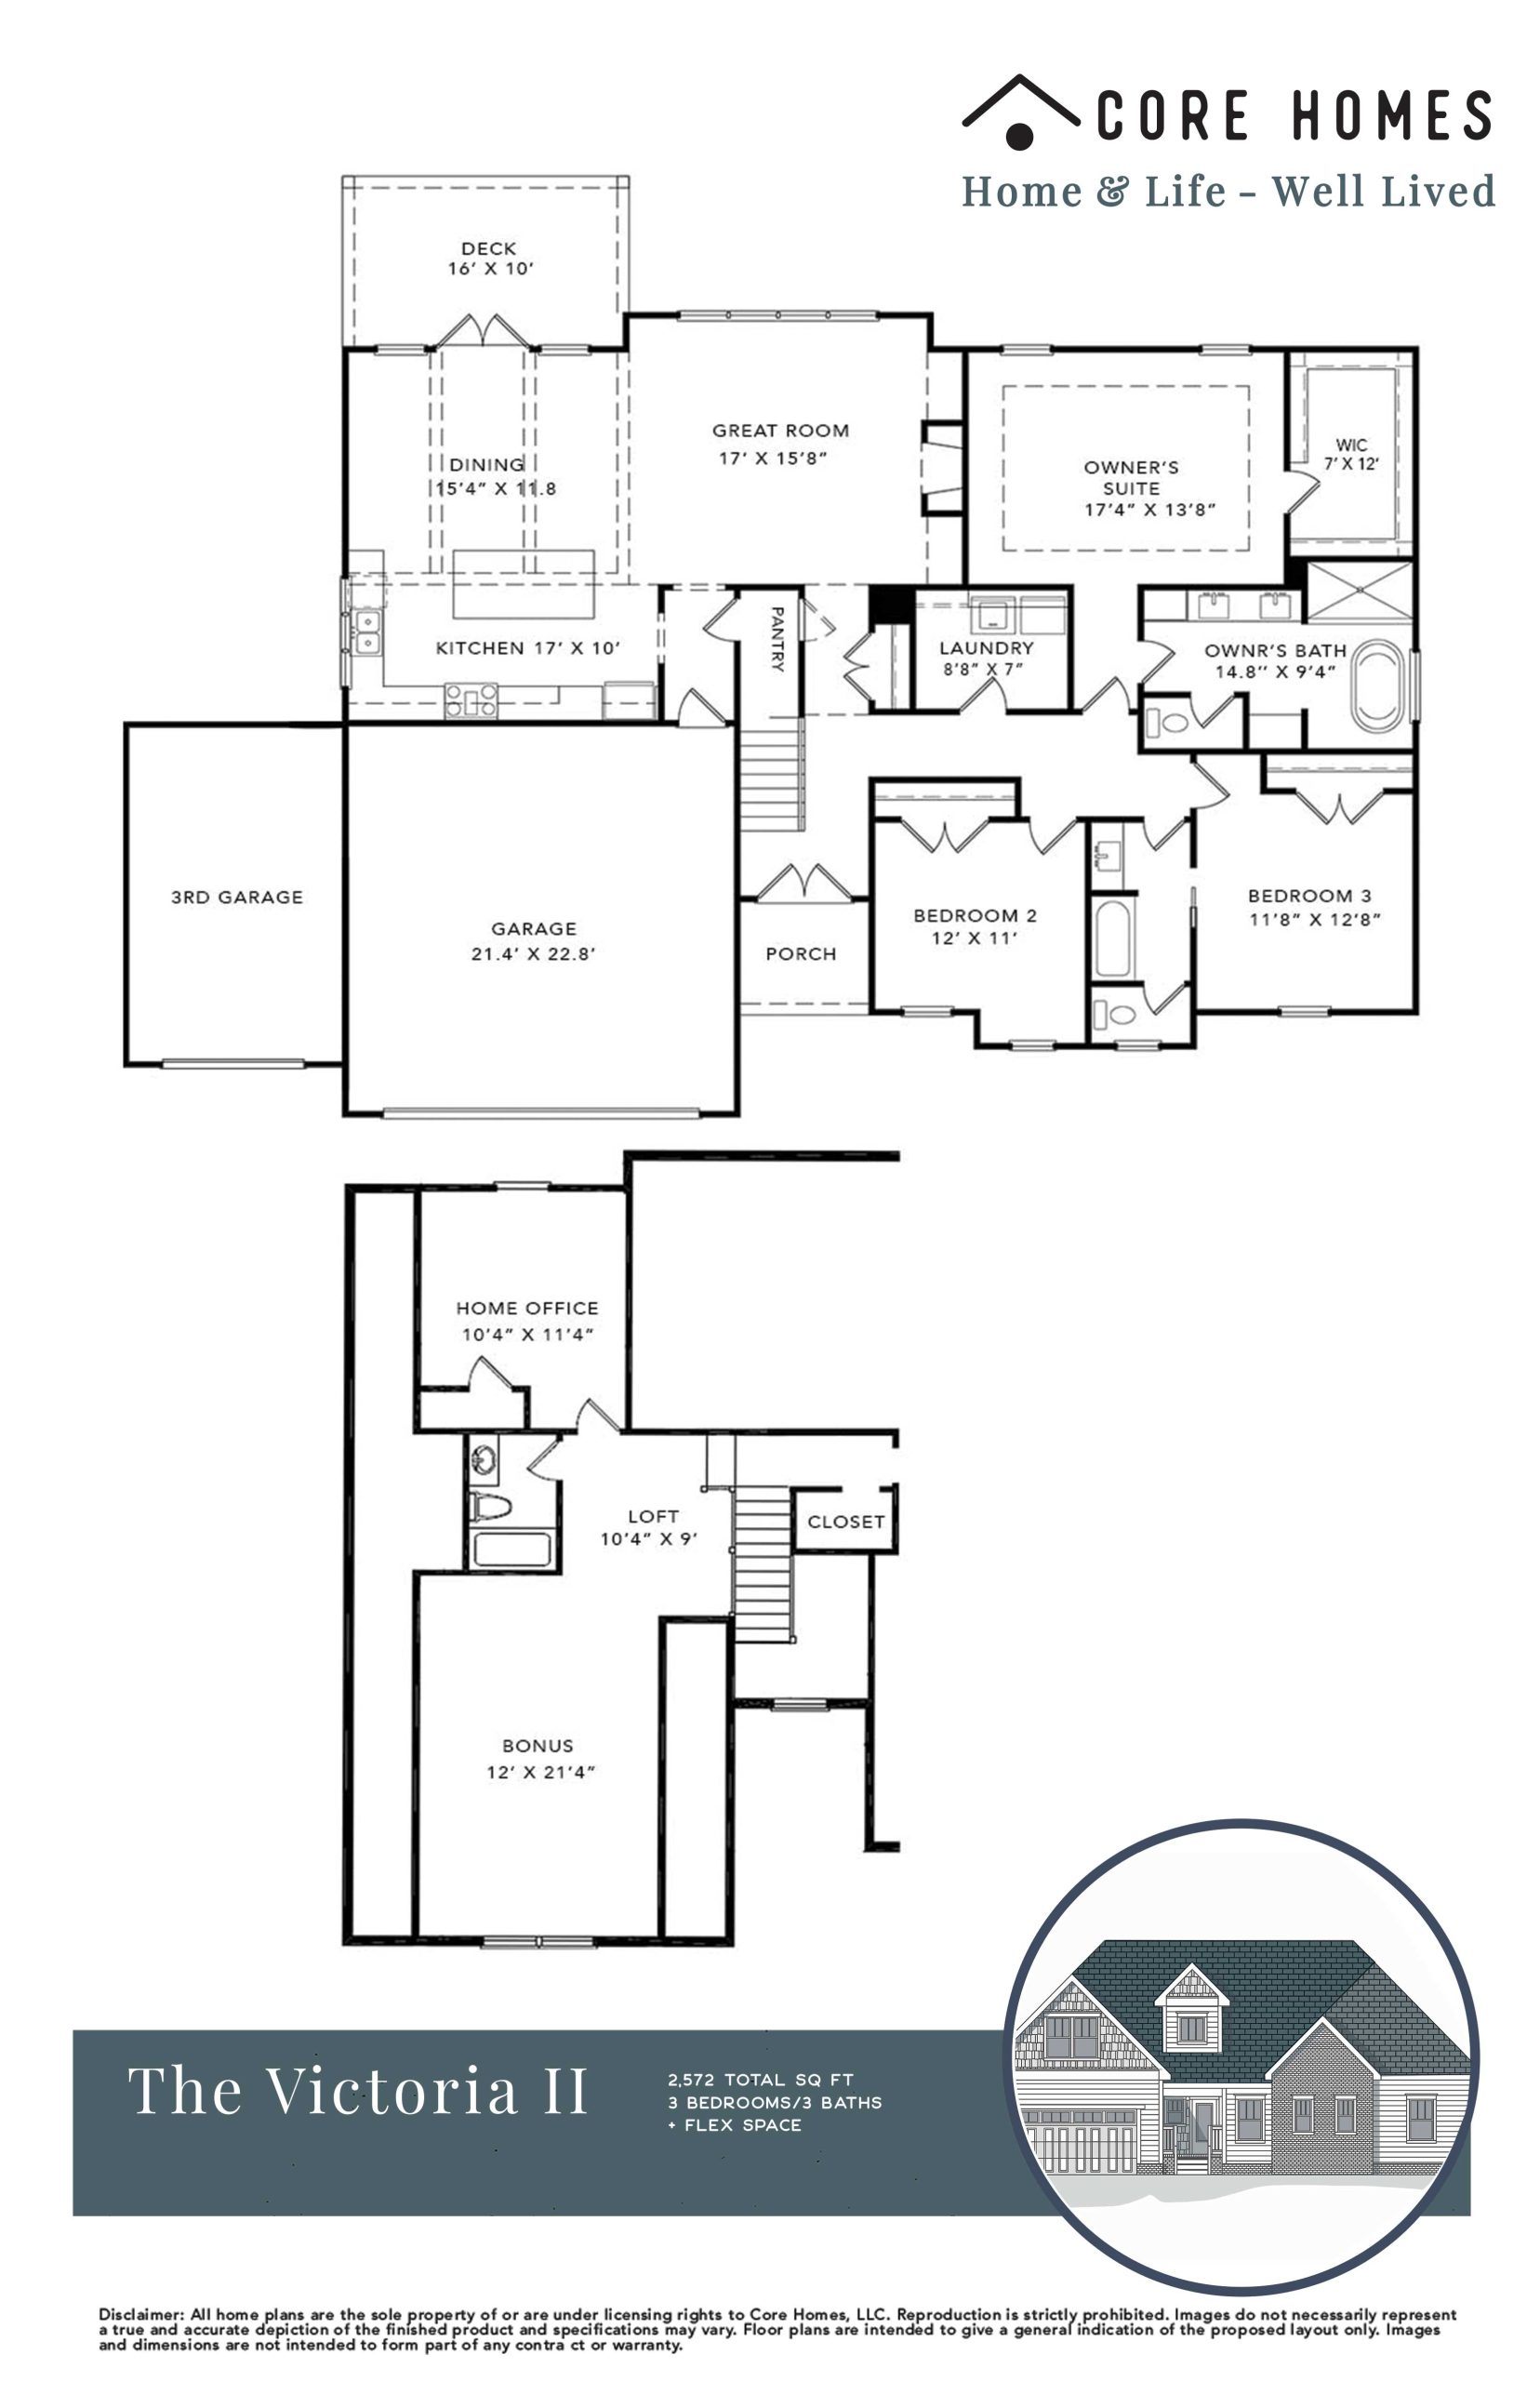 Victoria II floor plan Core Homes